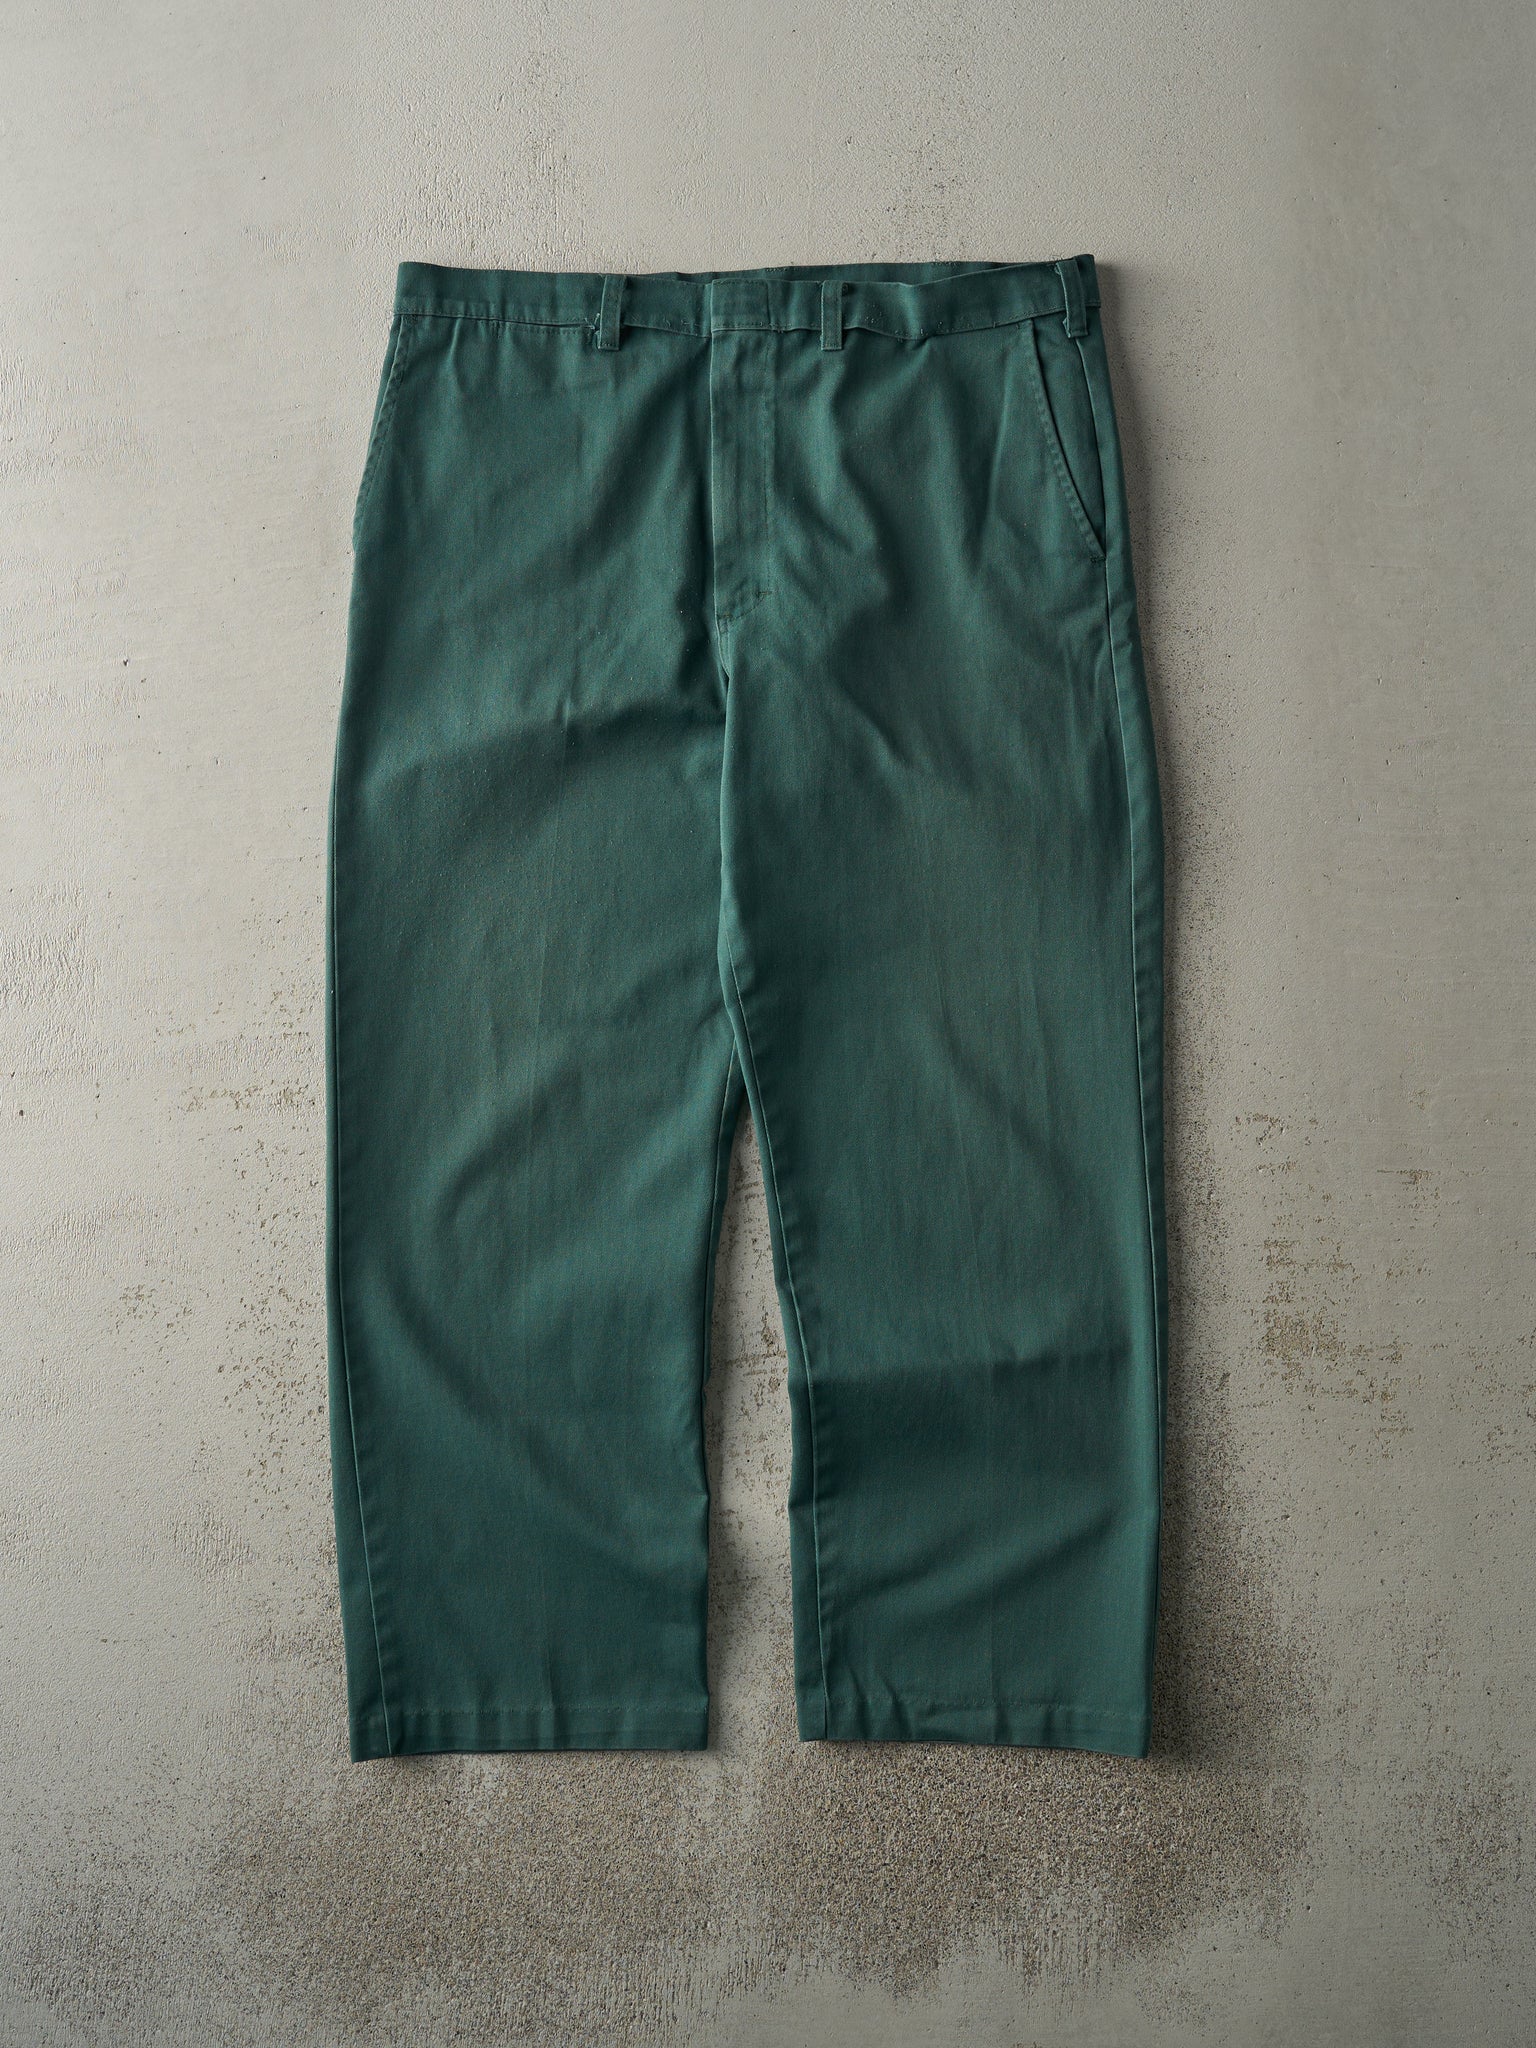 Vintage 90s Green Work Pants (37x27.5)